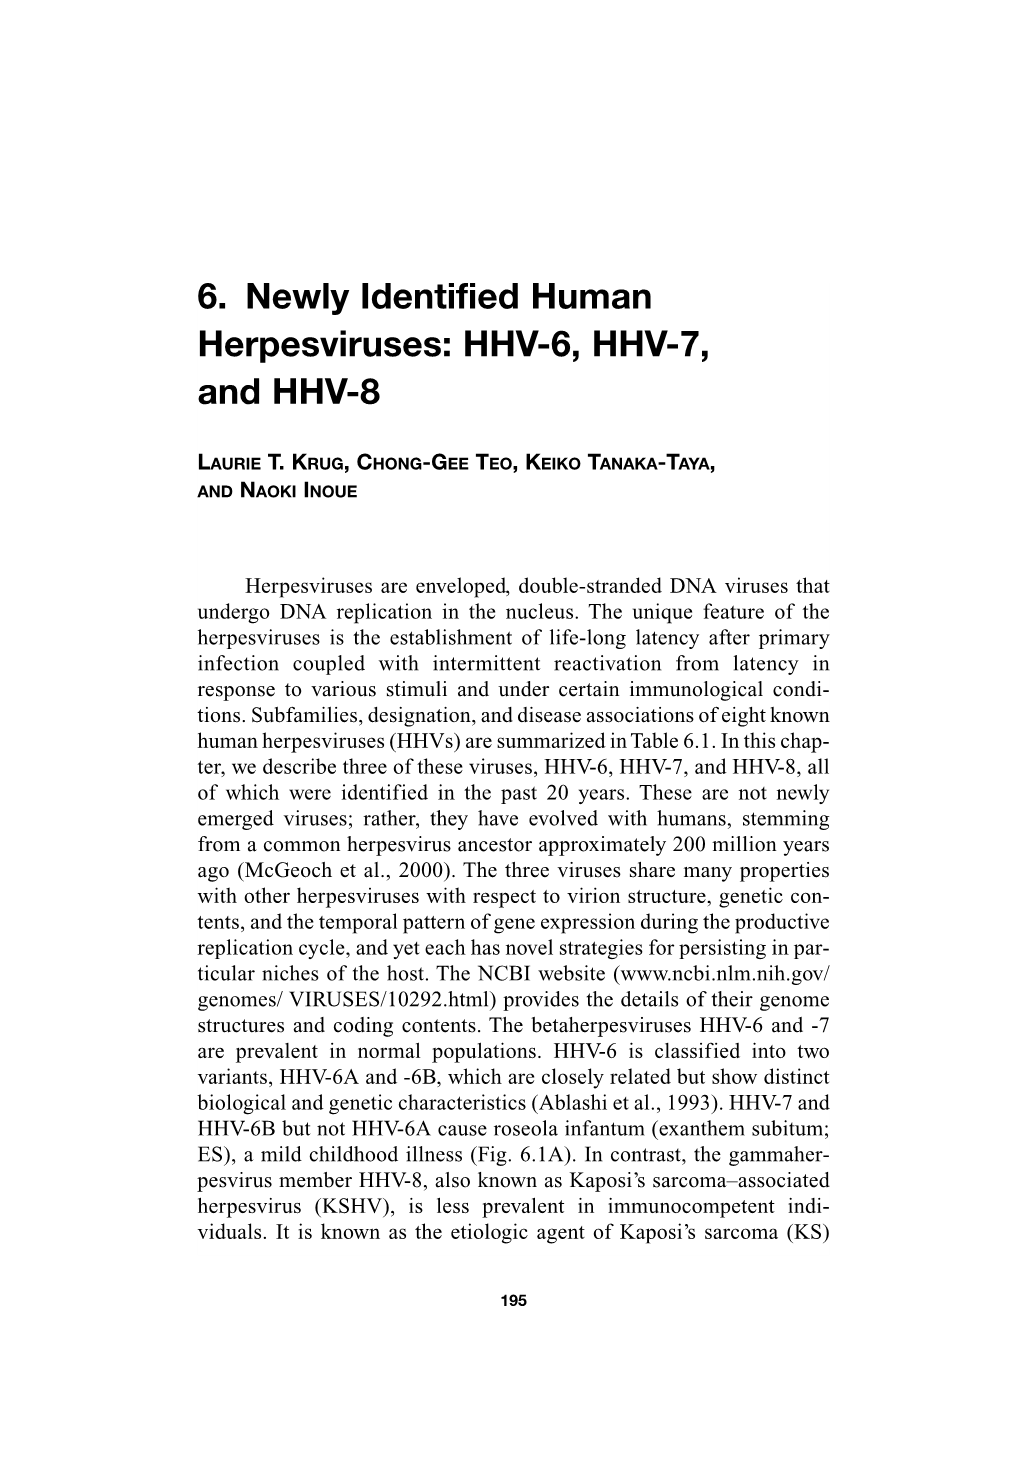 6. Newly Identified Human Herpesviruses: HHV-6, HHV-7, and HHV-8